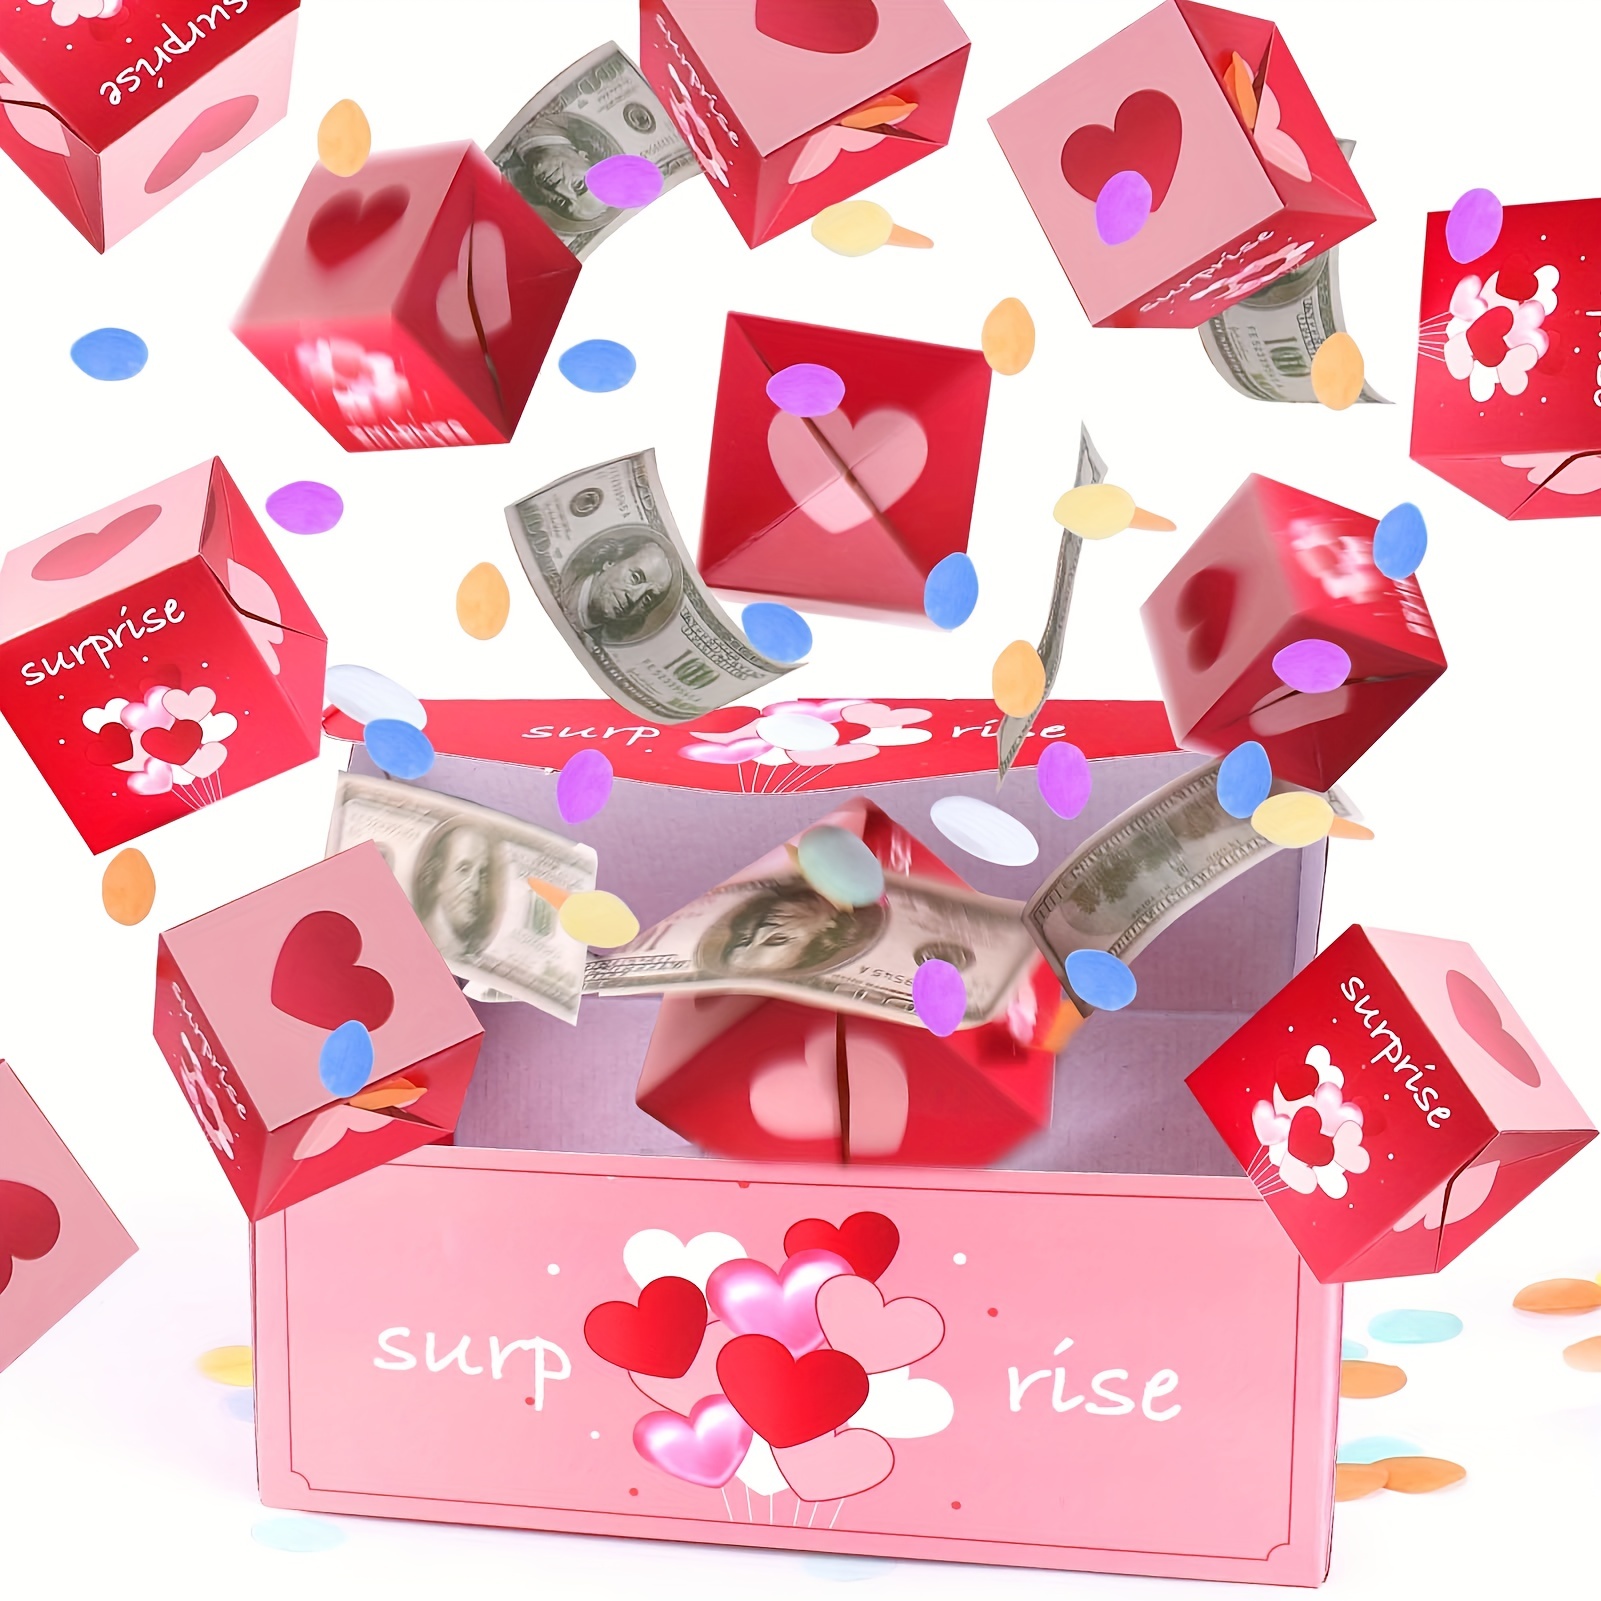  Caja de regalo sorpresa – Creando la caja de regalo más  sorprendente explosión para dinero, cajas sorpresa de los mejores deseos  para Navidad, Halloween, cumpleaños, aniversario, propuesta de San Valentín  (B) 